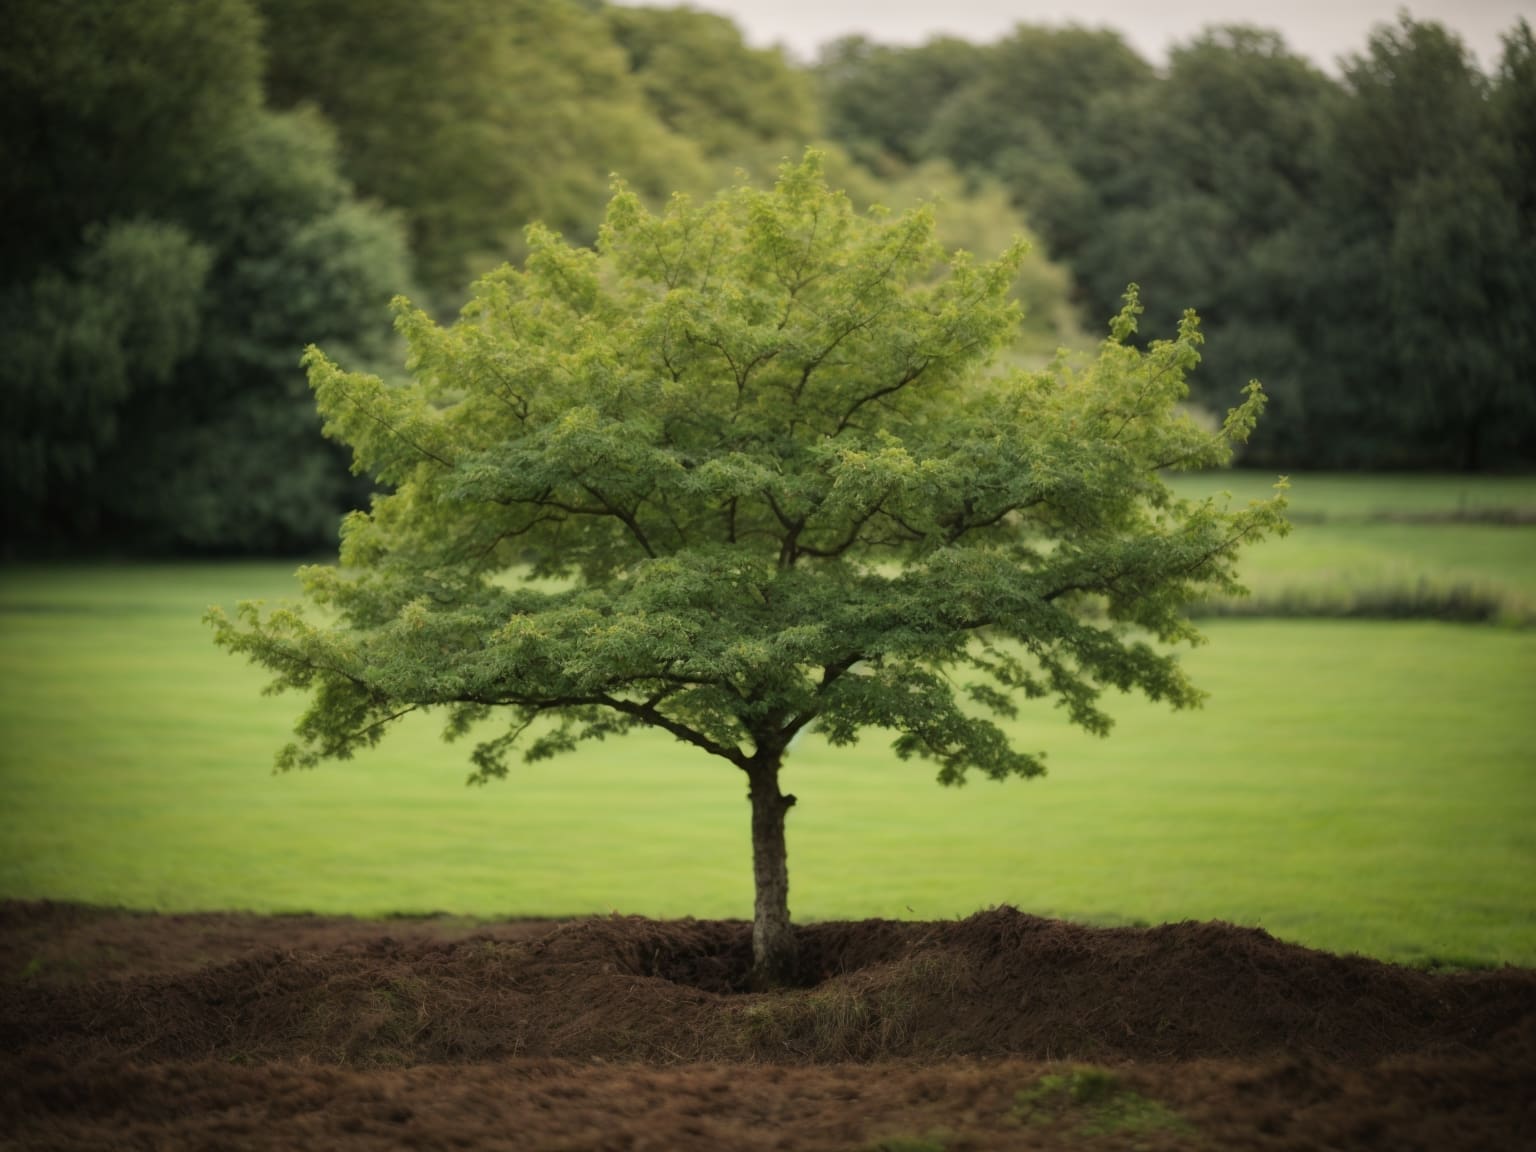 Una guida completa per scegliere la collocazione ideale degli alberi nel tuo giardino, considerando fattori essenziali